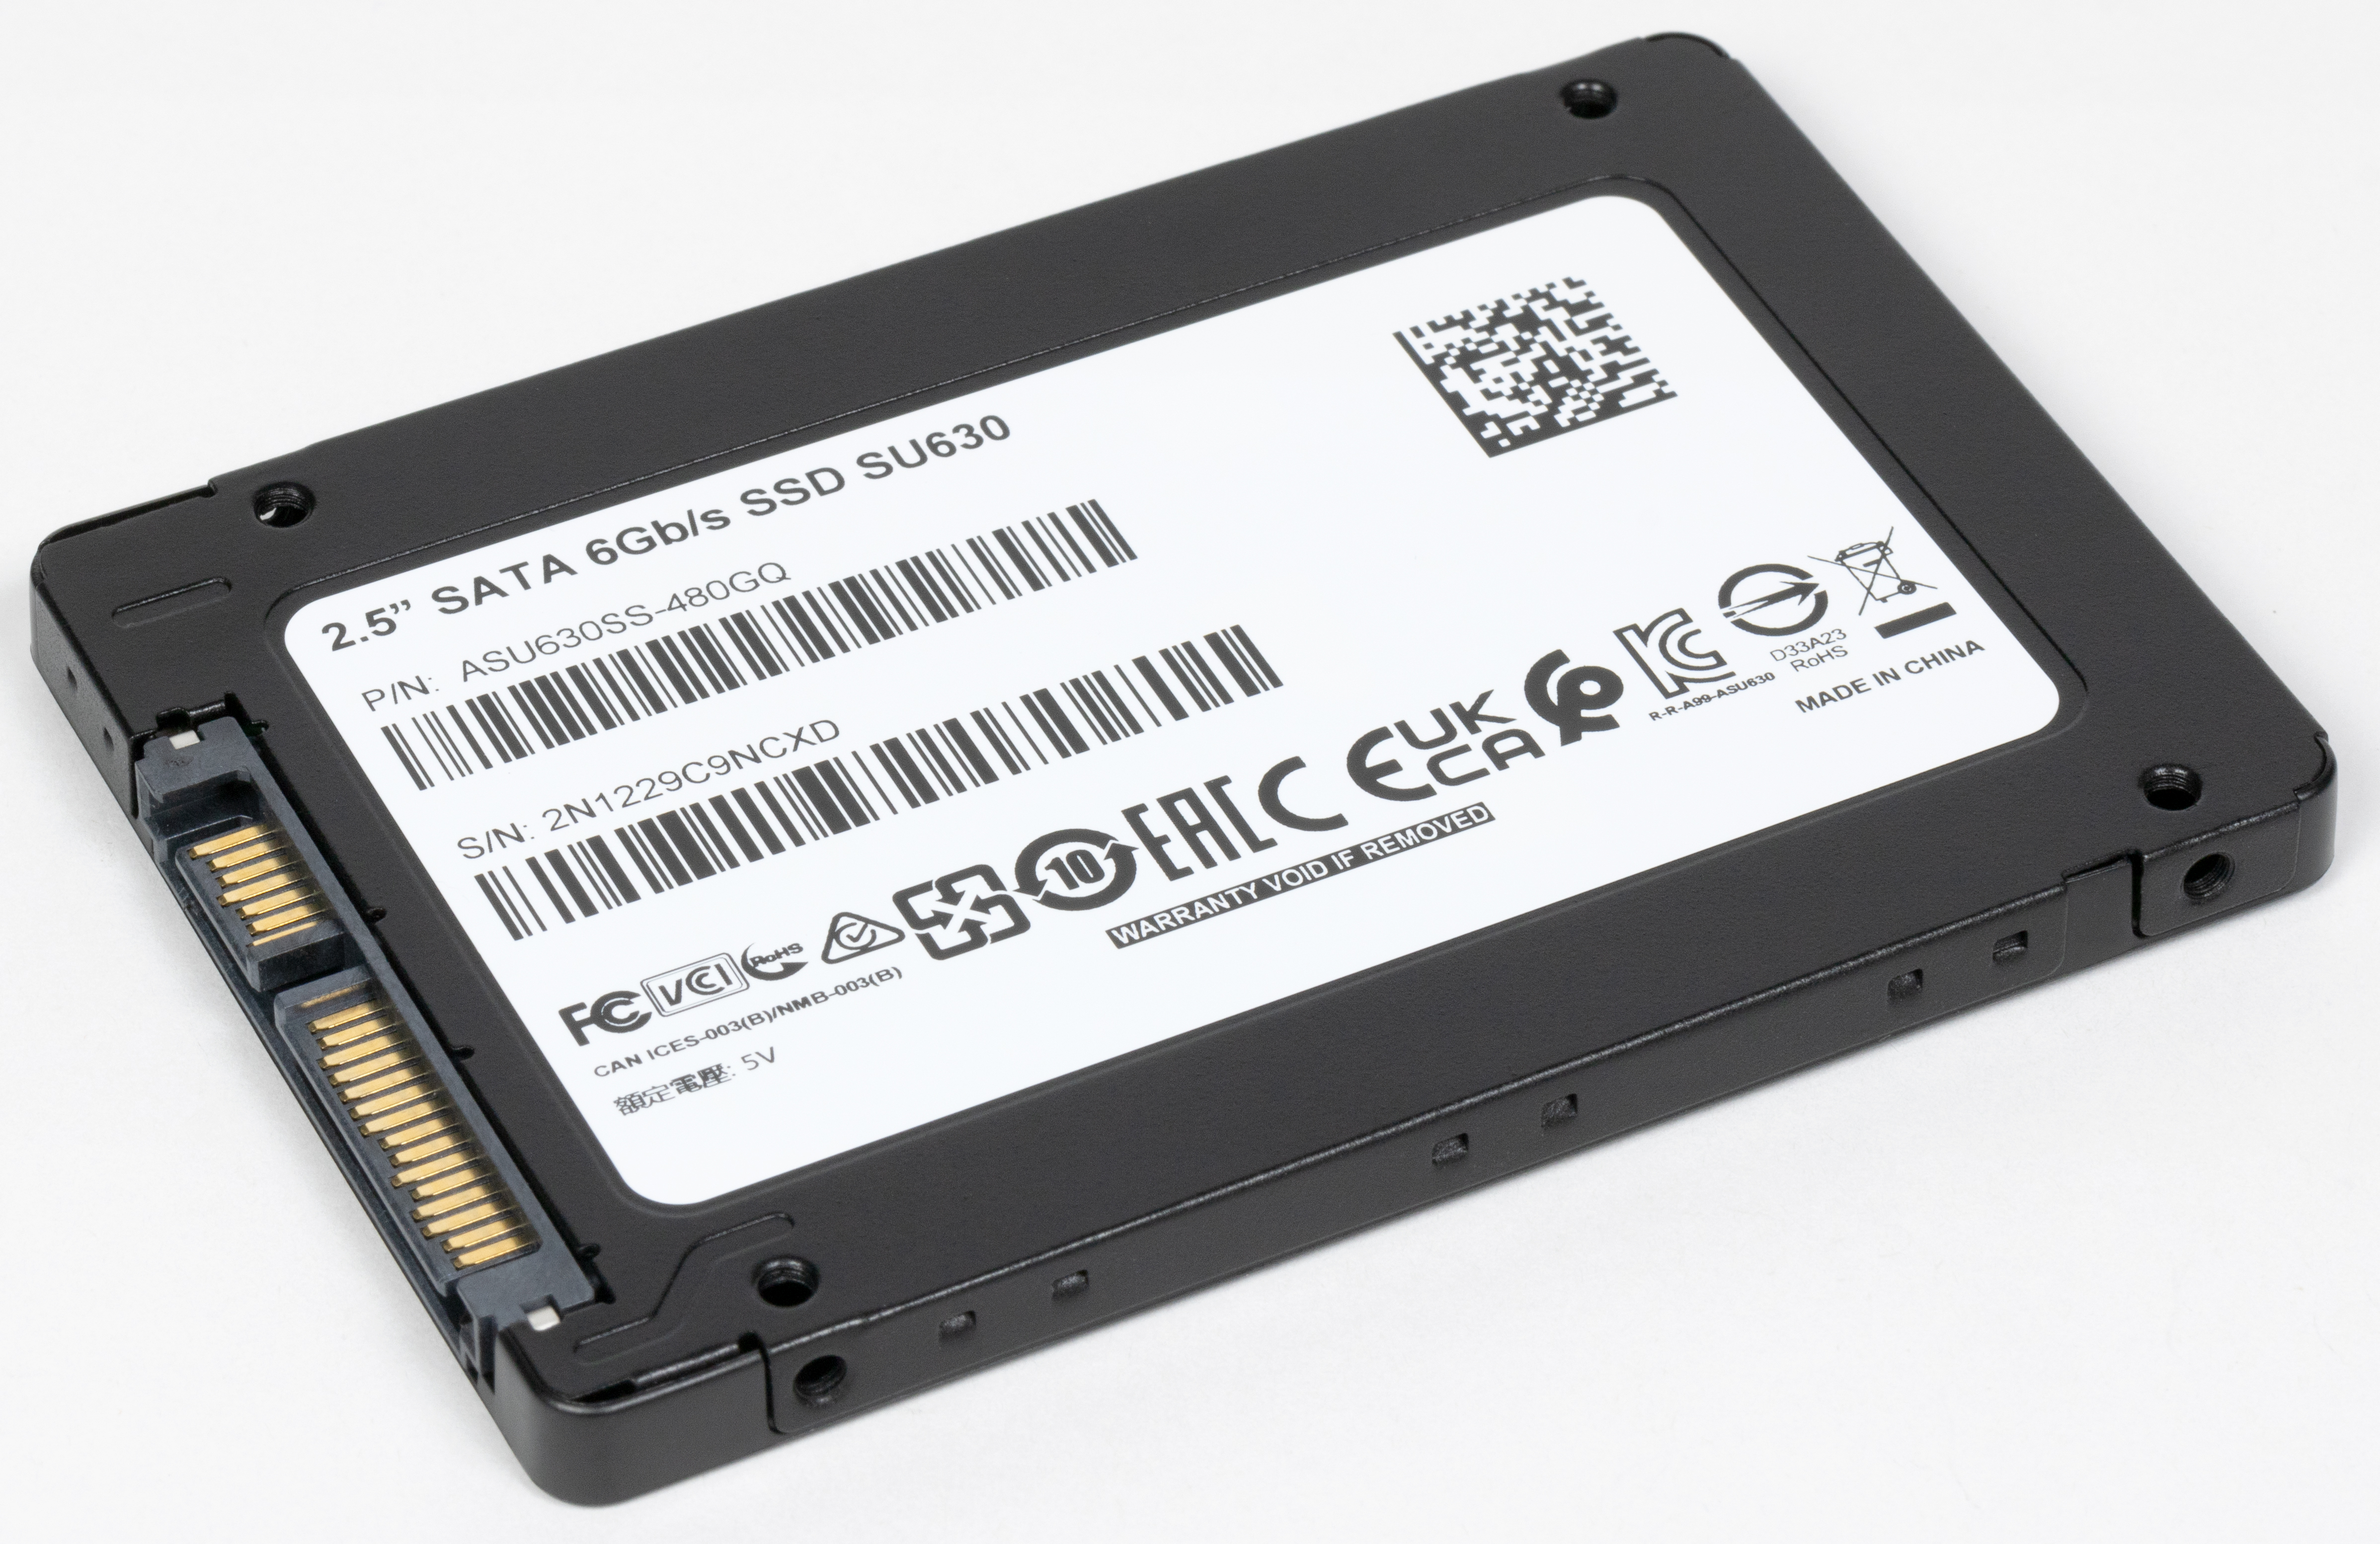 Ssd 650. 2.5 SATA 6 GB/S SSD su650. SSD A data su650 240gb. SSD A data 120gb.